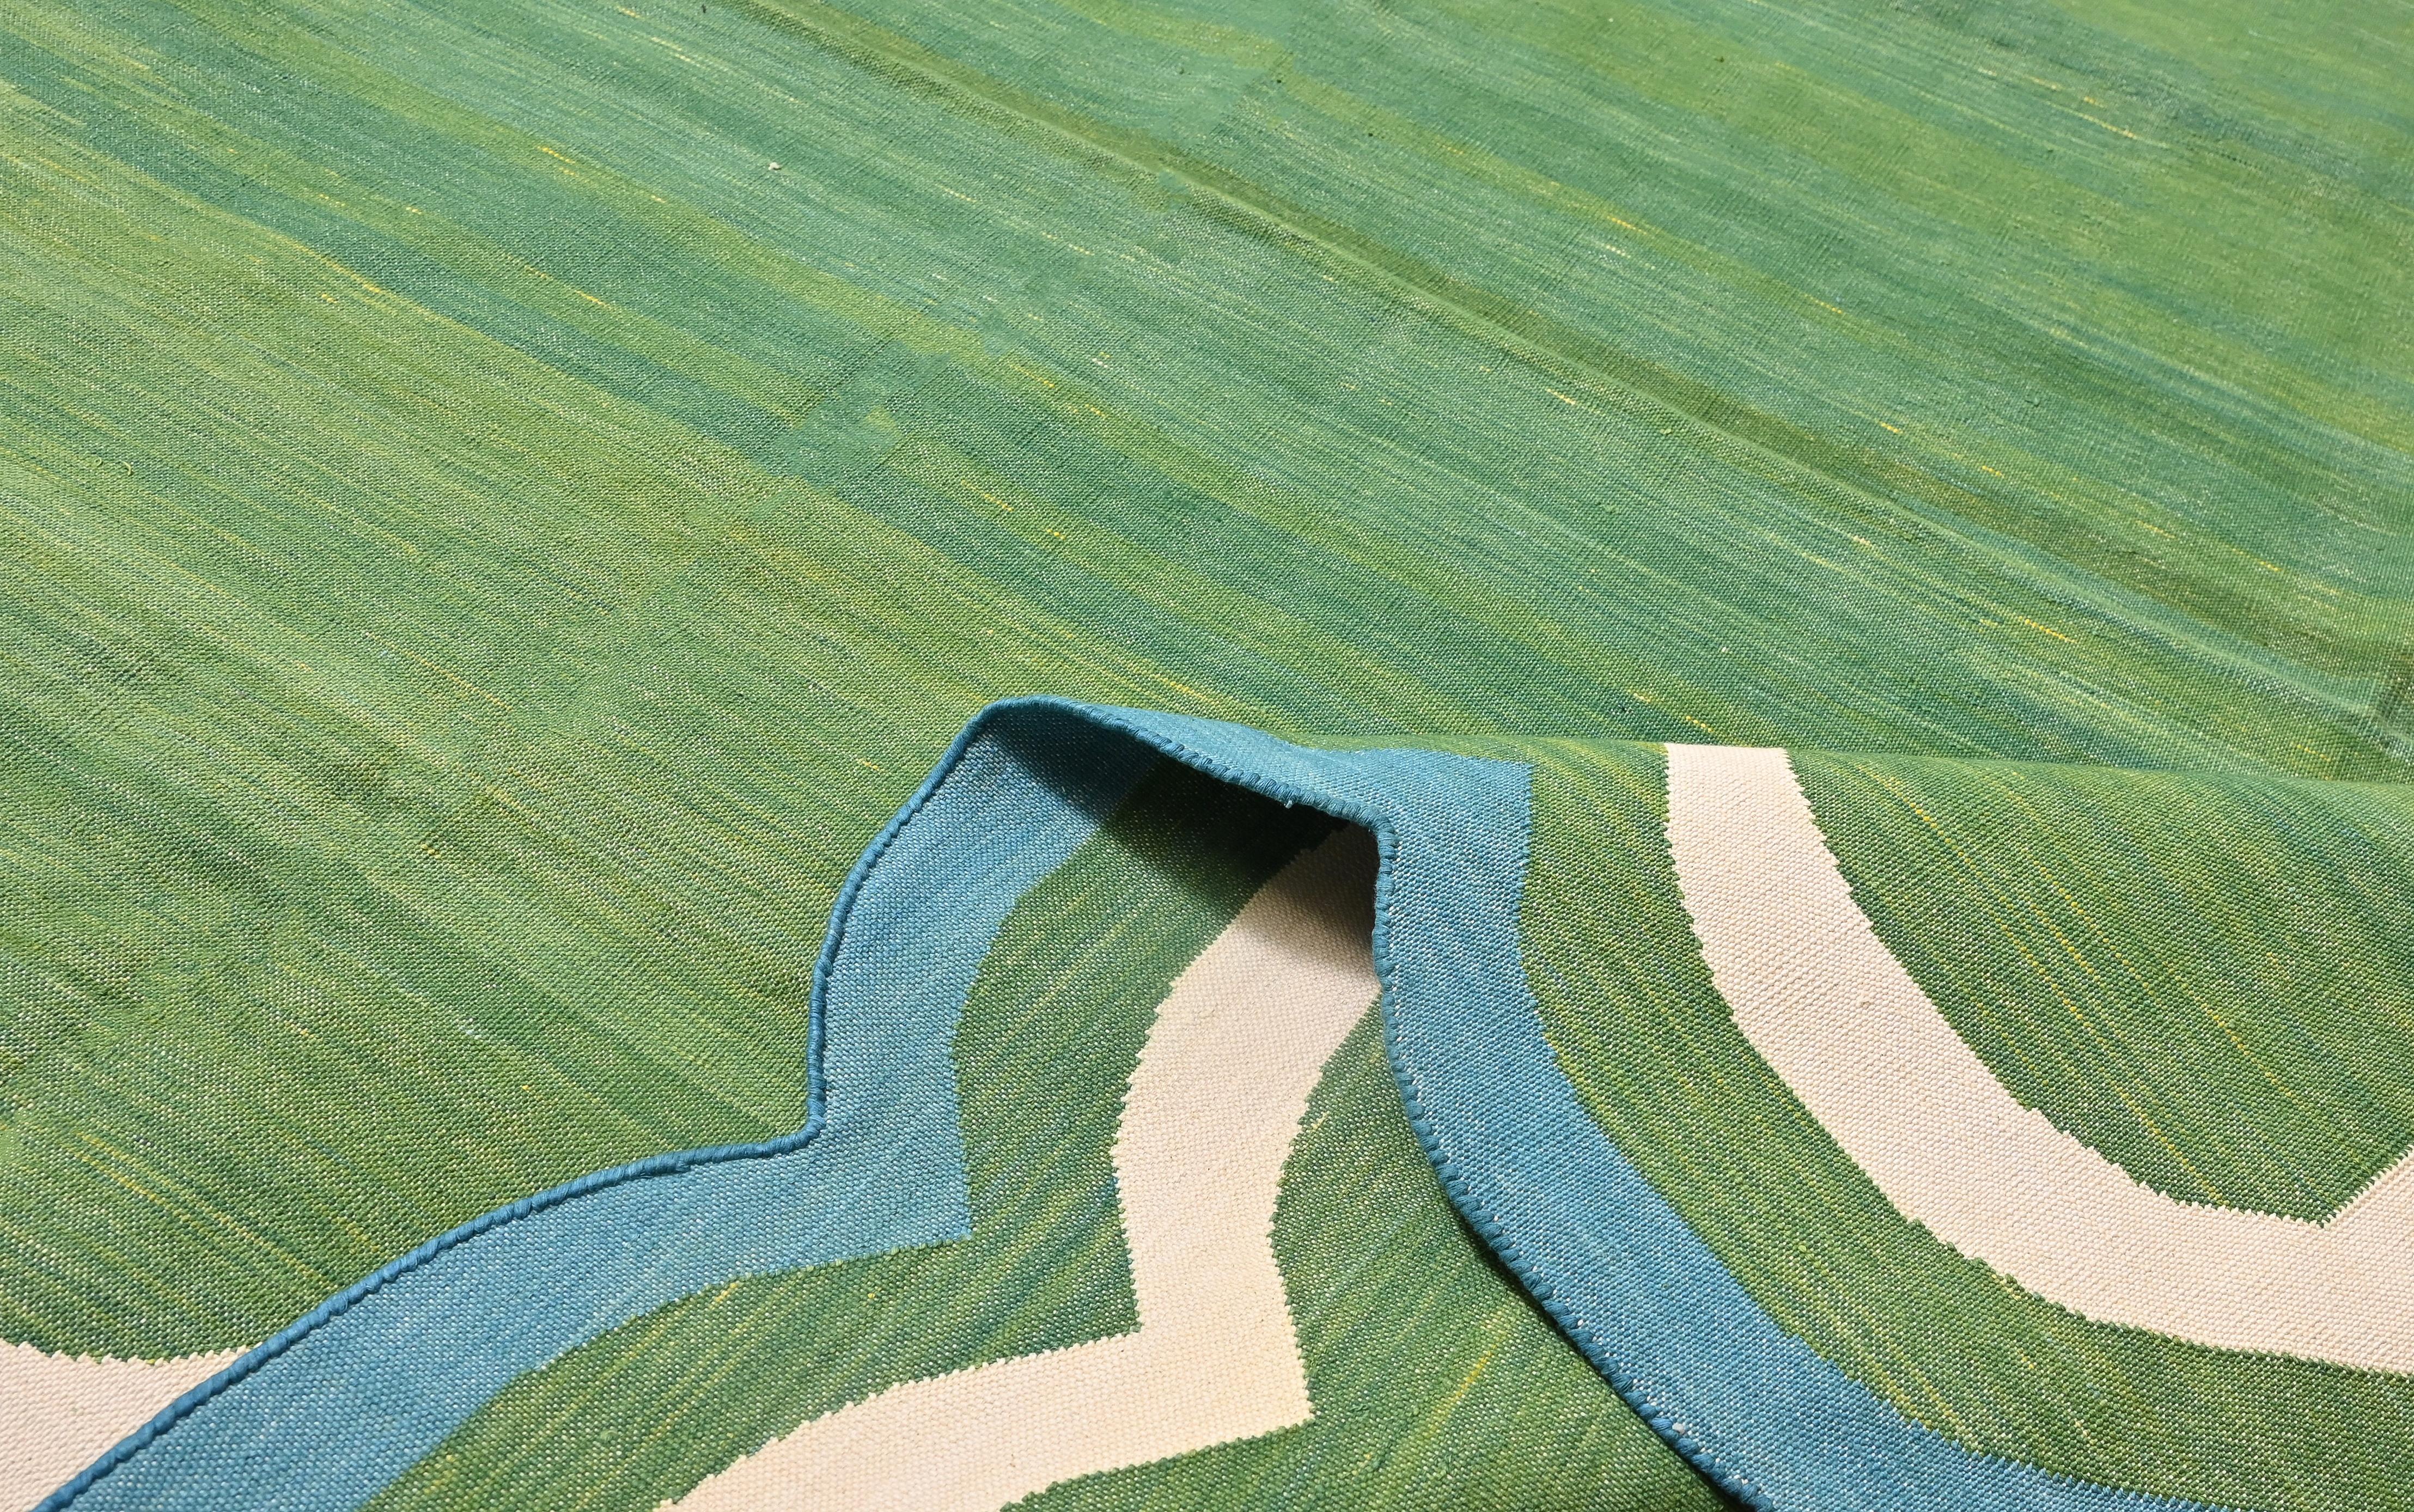 Baumwolle pflanzlich gefärbt Waldgrün, Creme und Teal Blau Zwei Seiten Scalloped Teppich-5'x8' 
(Jakobsmuscheln laufen auf allen 8 Fußseiten)
Diese speziellen flachgewebten Dhurries werden aus 15-fachem Garn aus 100% Baumwolle handgewebt. Aufgrund